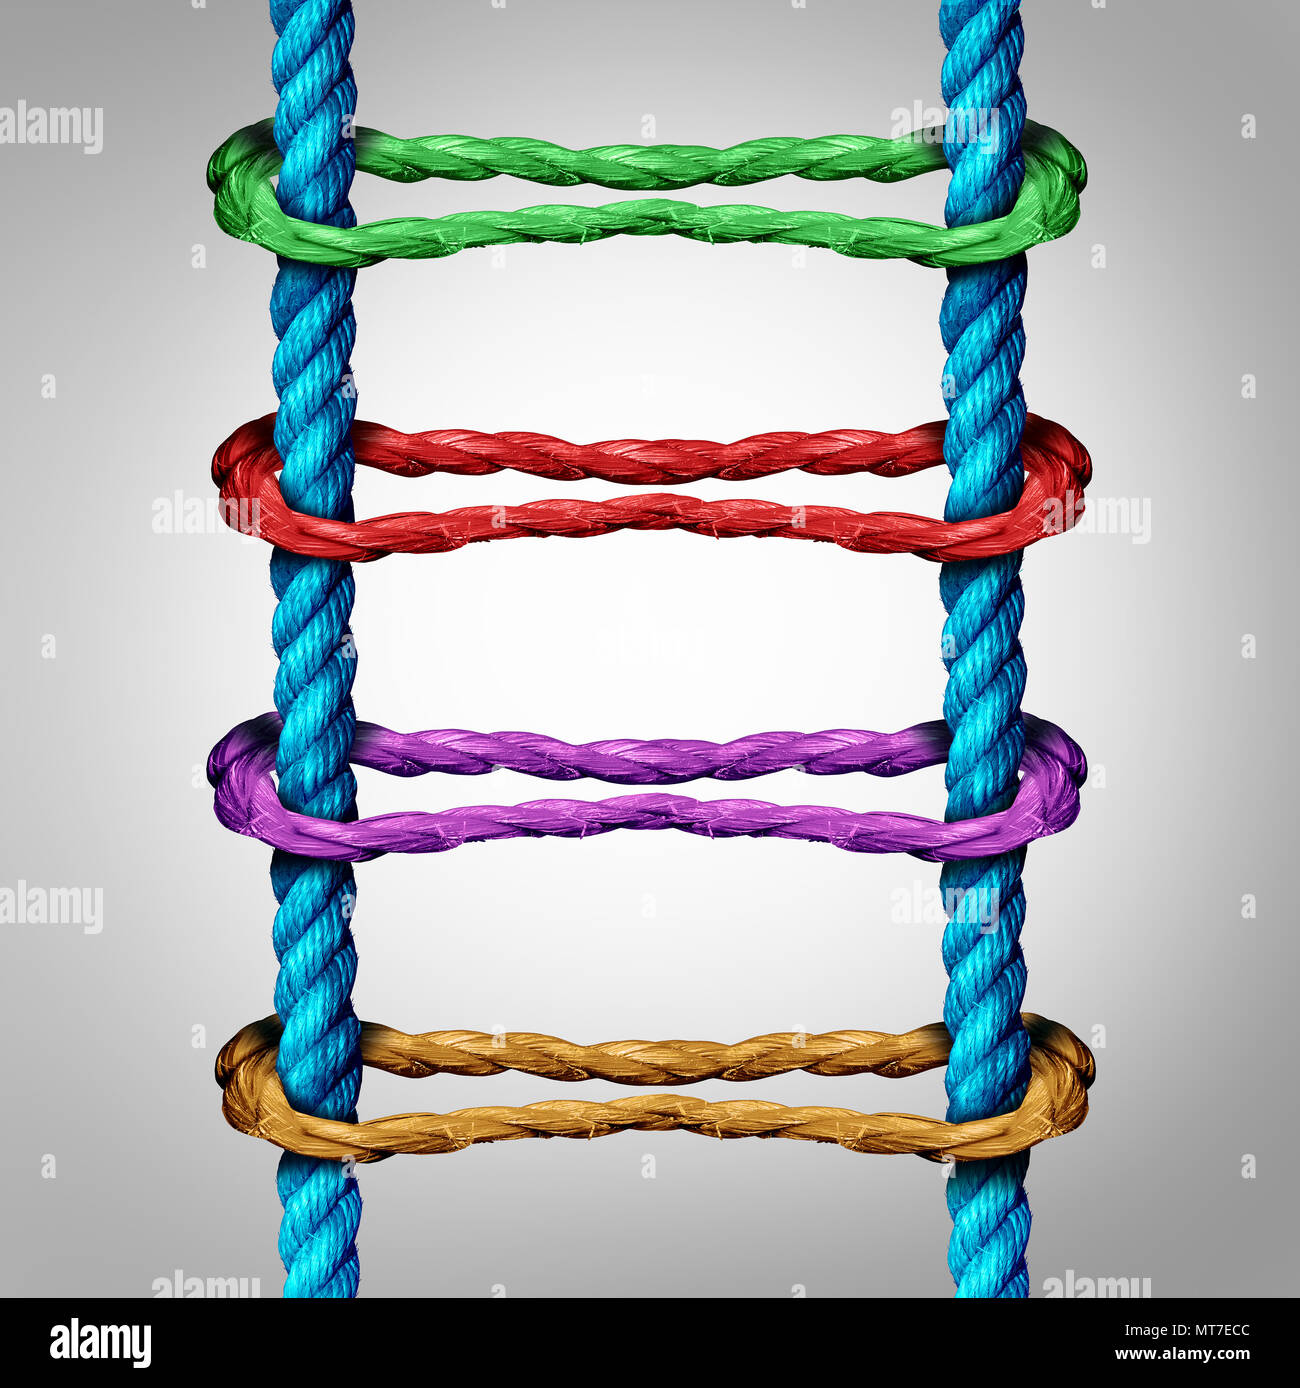 Connexion de l'échelle comme un concept d'entreprise réseau central comme un groupe de cordes différents connectés à cordes parallèles comme une métaphore pour la connectivité. Banque D'Images